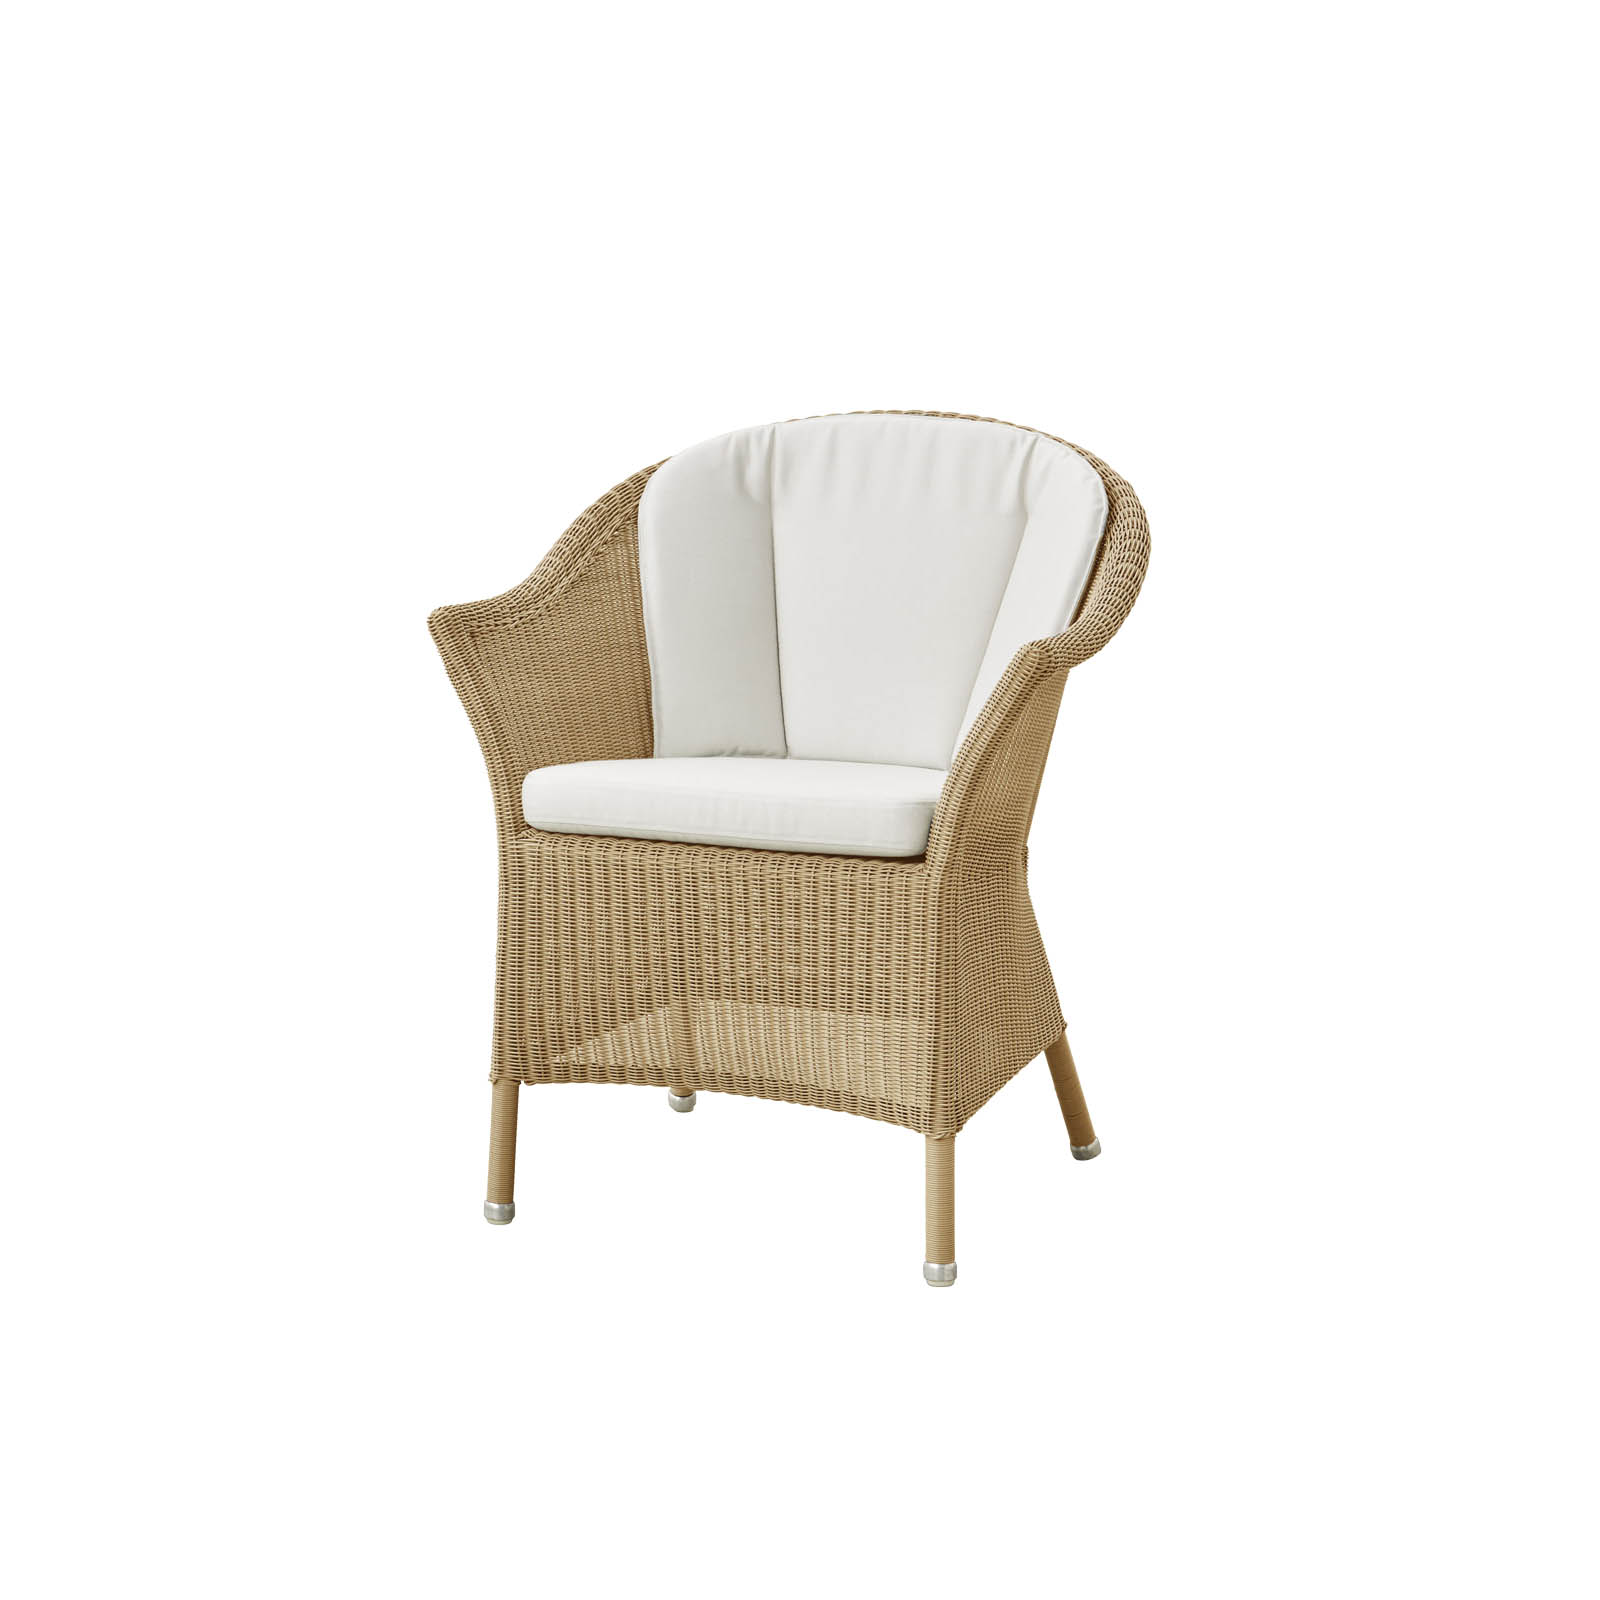 Lansing Stuhl aus Cane-line Weave in Natural mit Kissen aus Cane-line Natté in White und Kissen aus Cane-line Natté in White